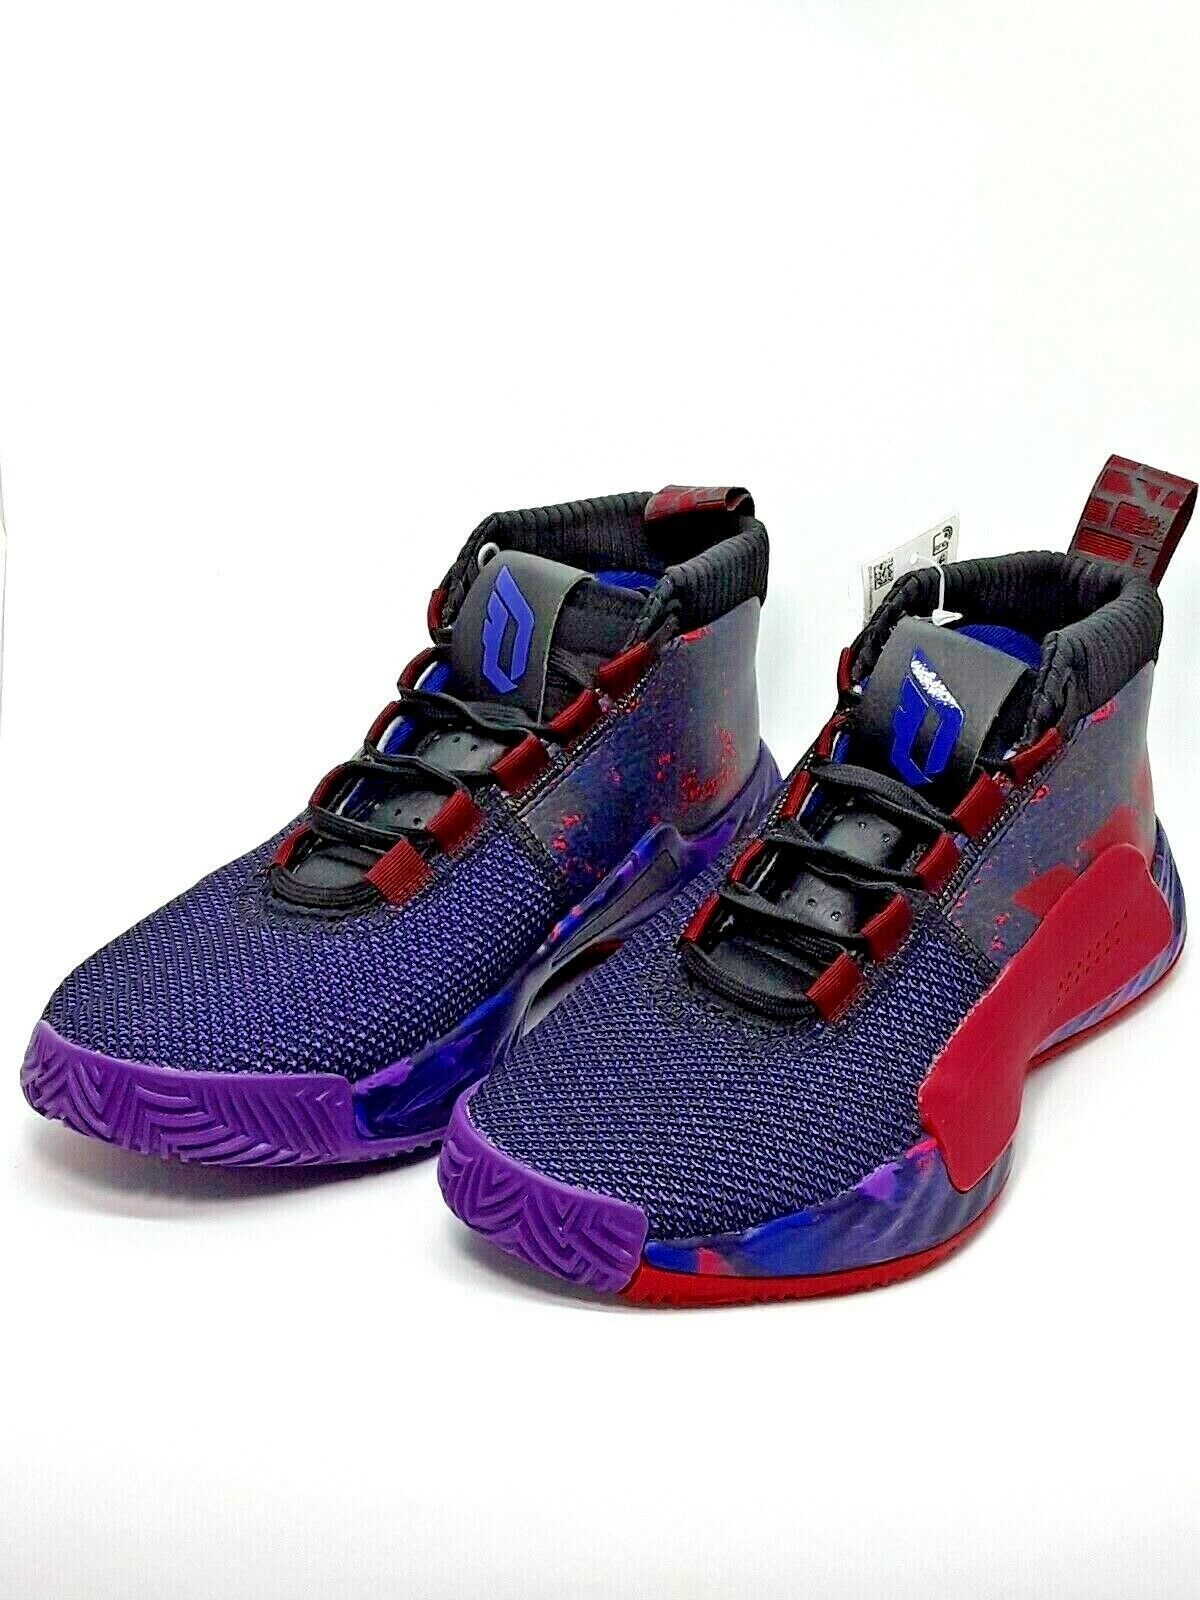 [NEW]Adidas Dame 5 Shine Together Damian Lillard Basketball Shoes ...